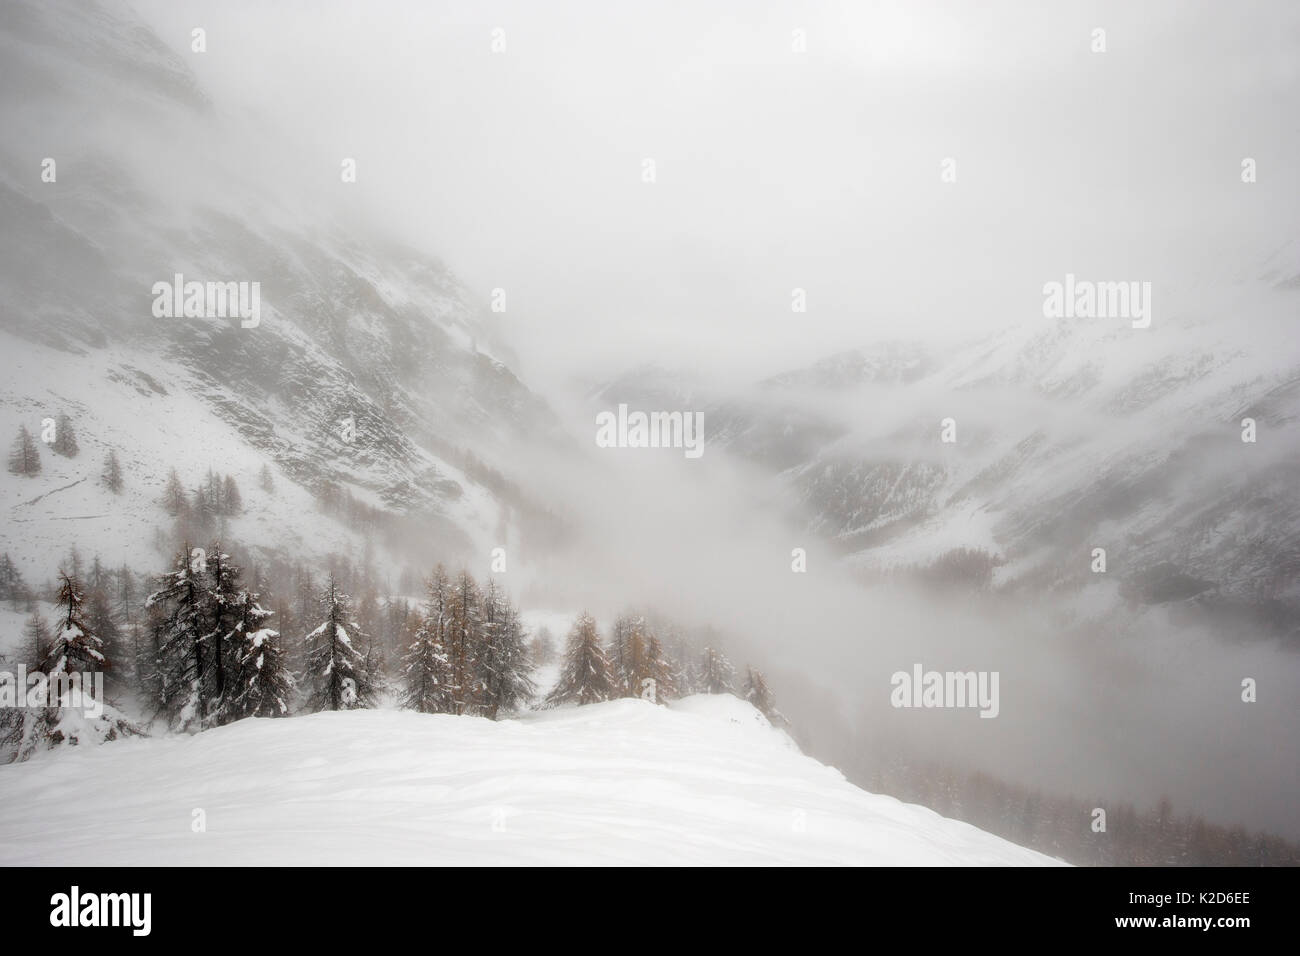 Winter Landschaft mit steilen Berghängen in Schnee auf einem nebligen Tag abgedeckt. Nationalpark Gran Paradiso, Italien, November 2014. Stockfoto